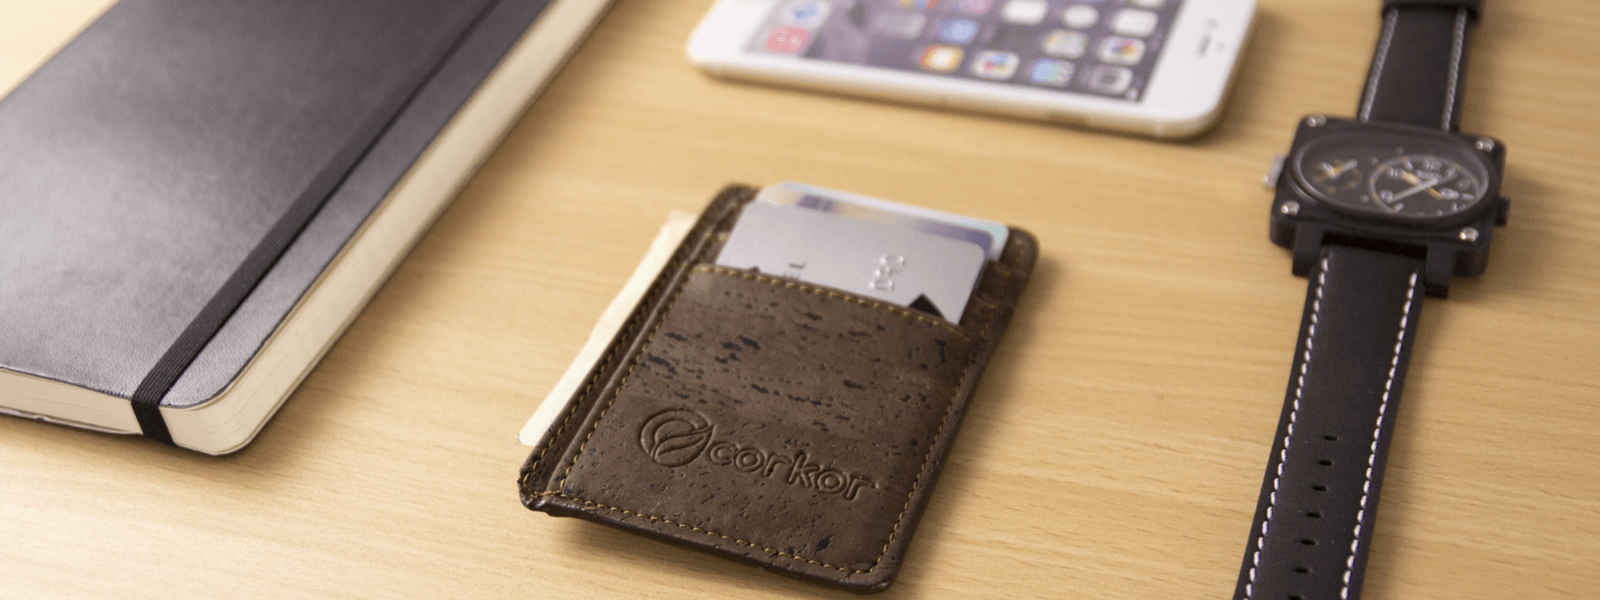 Corkor's Front Pocket Wallet Featured in Bestslimwallet.com | Corkor